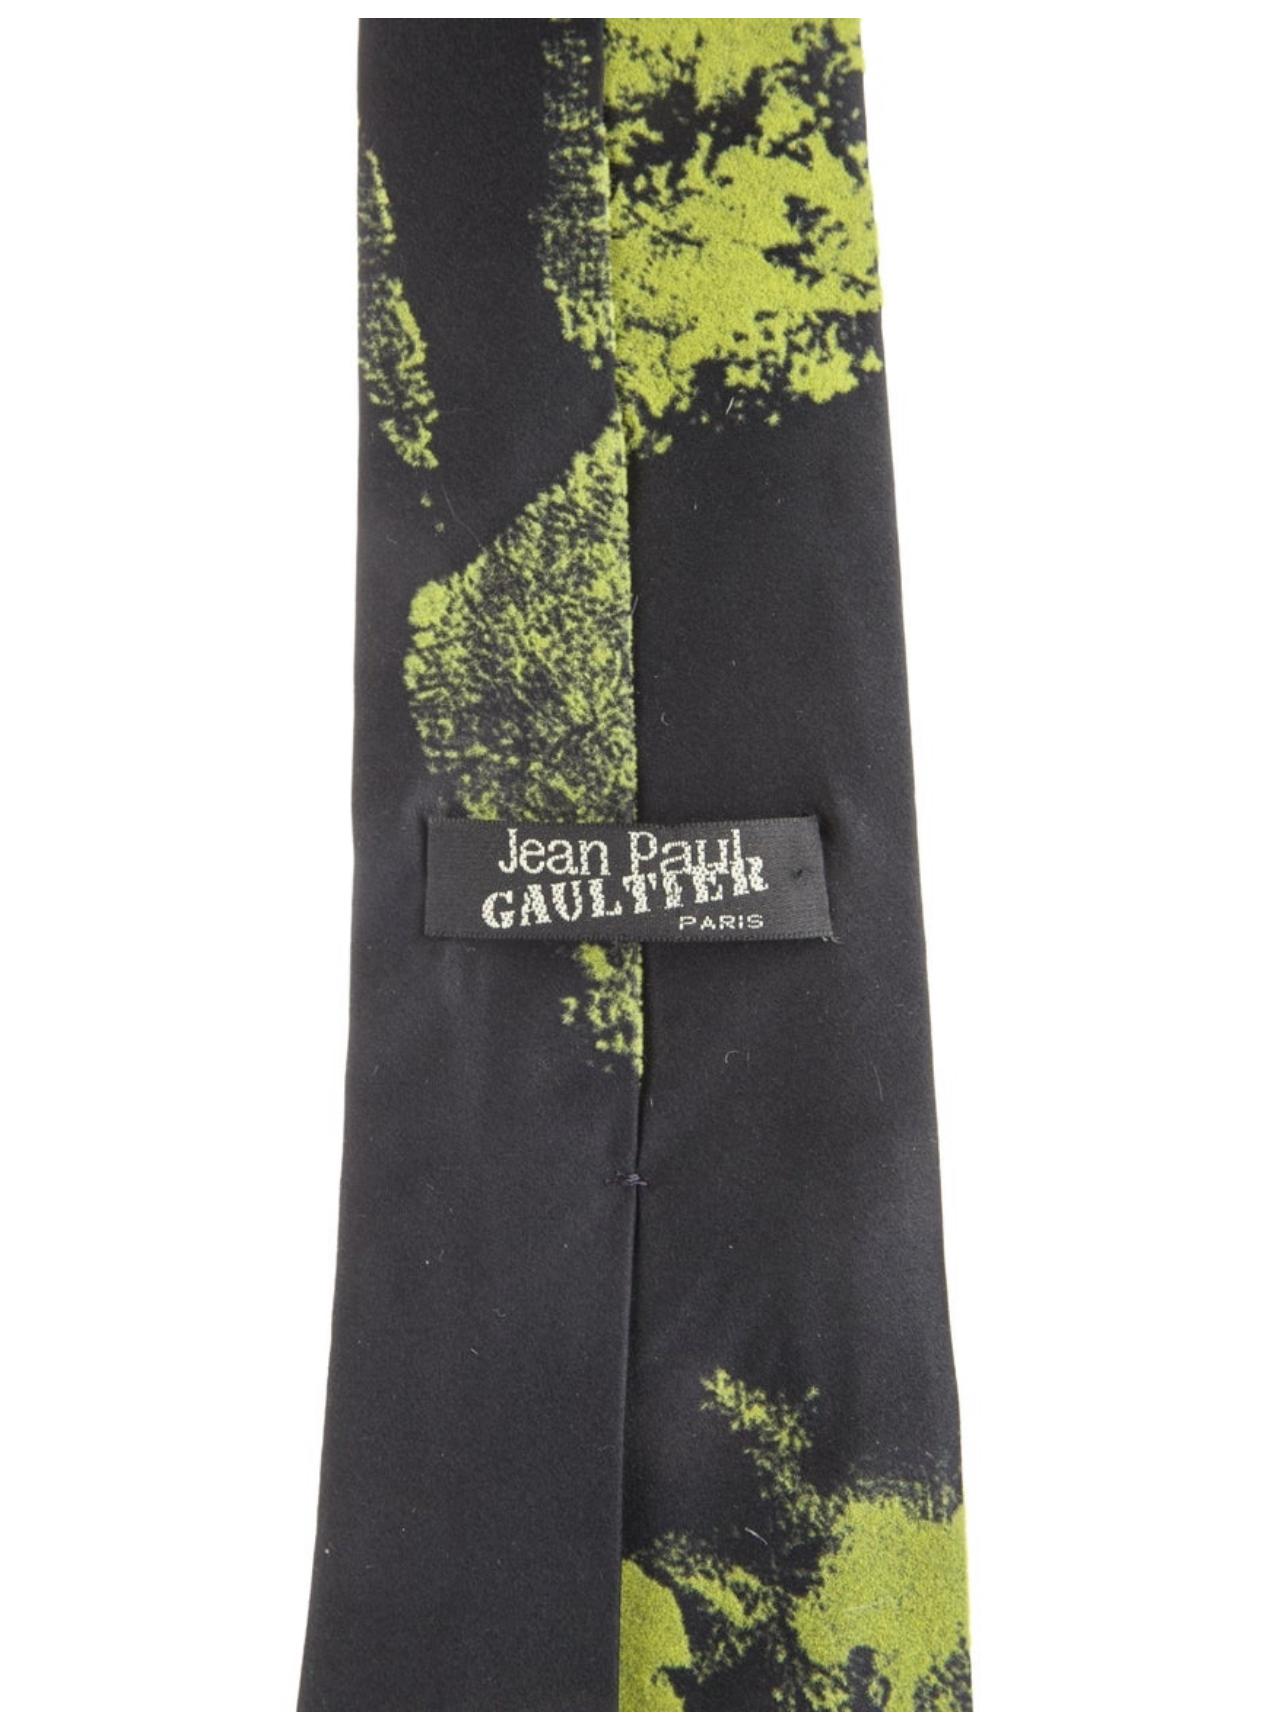 Jean-Paul Gaultier - Cravate imprimée à la main, années 1990  Excellent état à Austin, TX